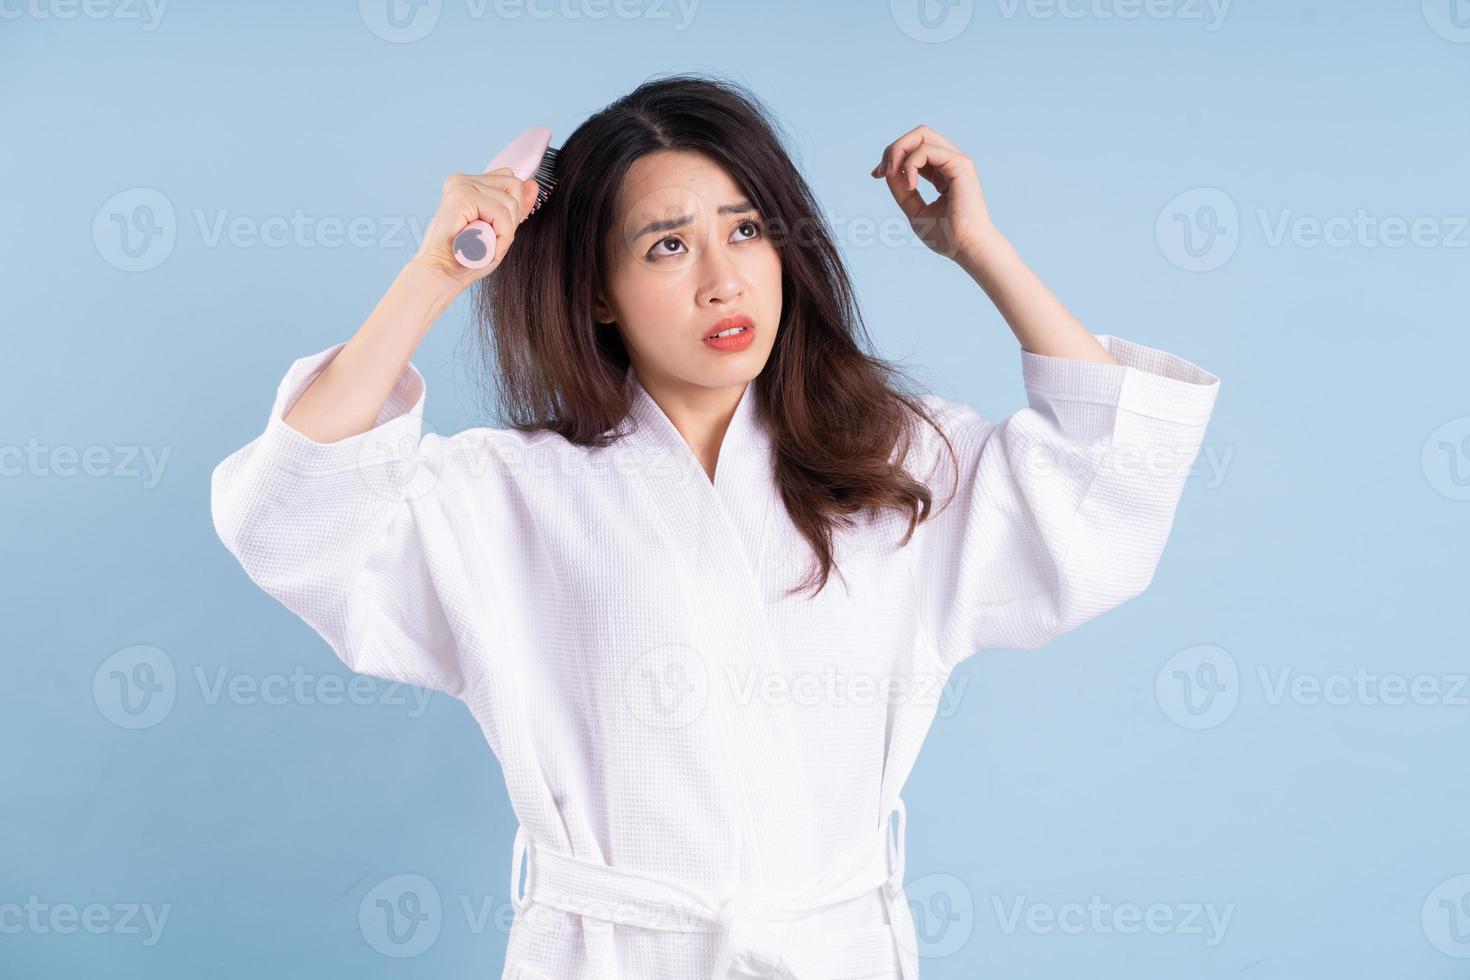 Jeune femme asiatique portant un peignoir sur fond bleu photo